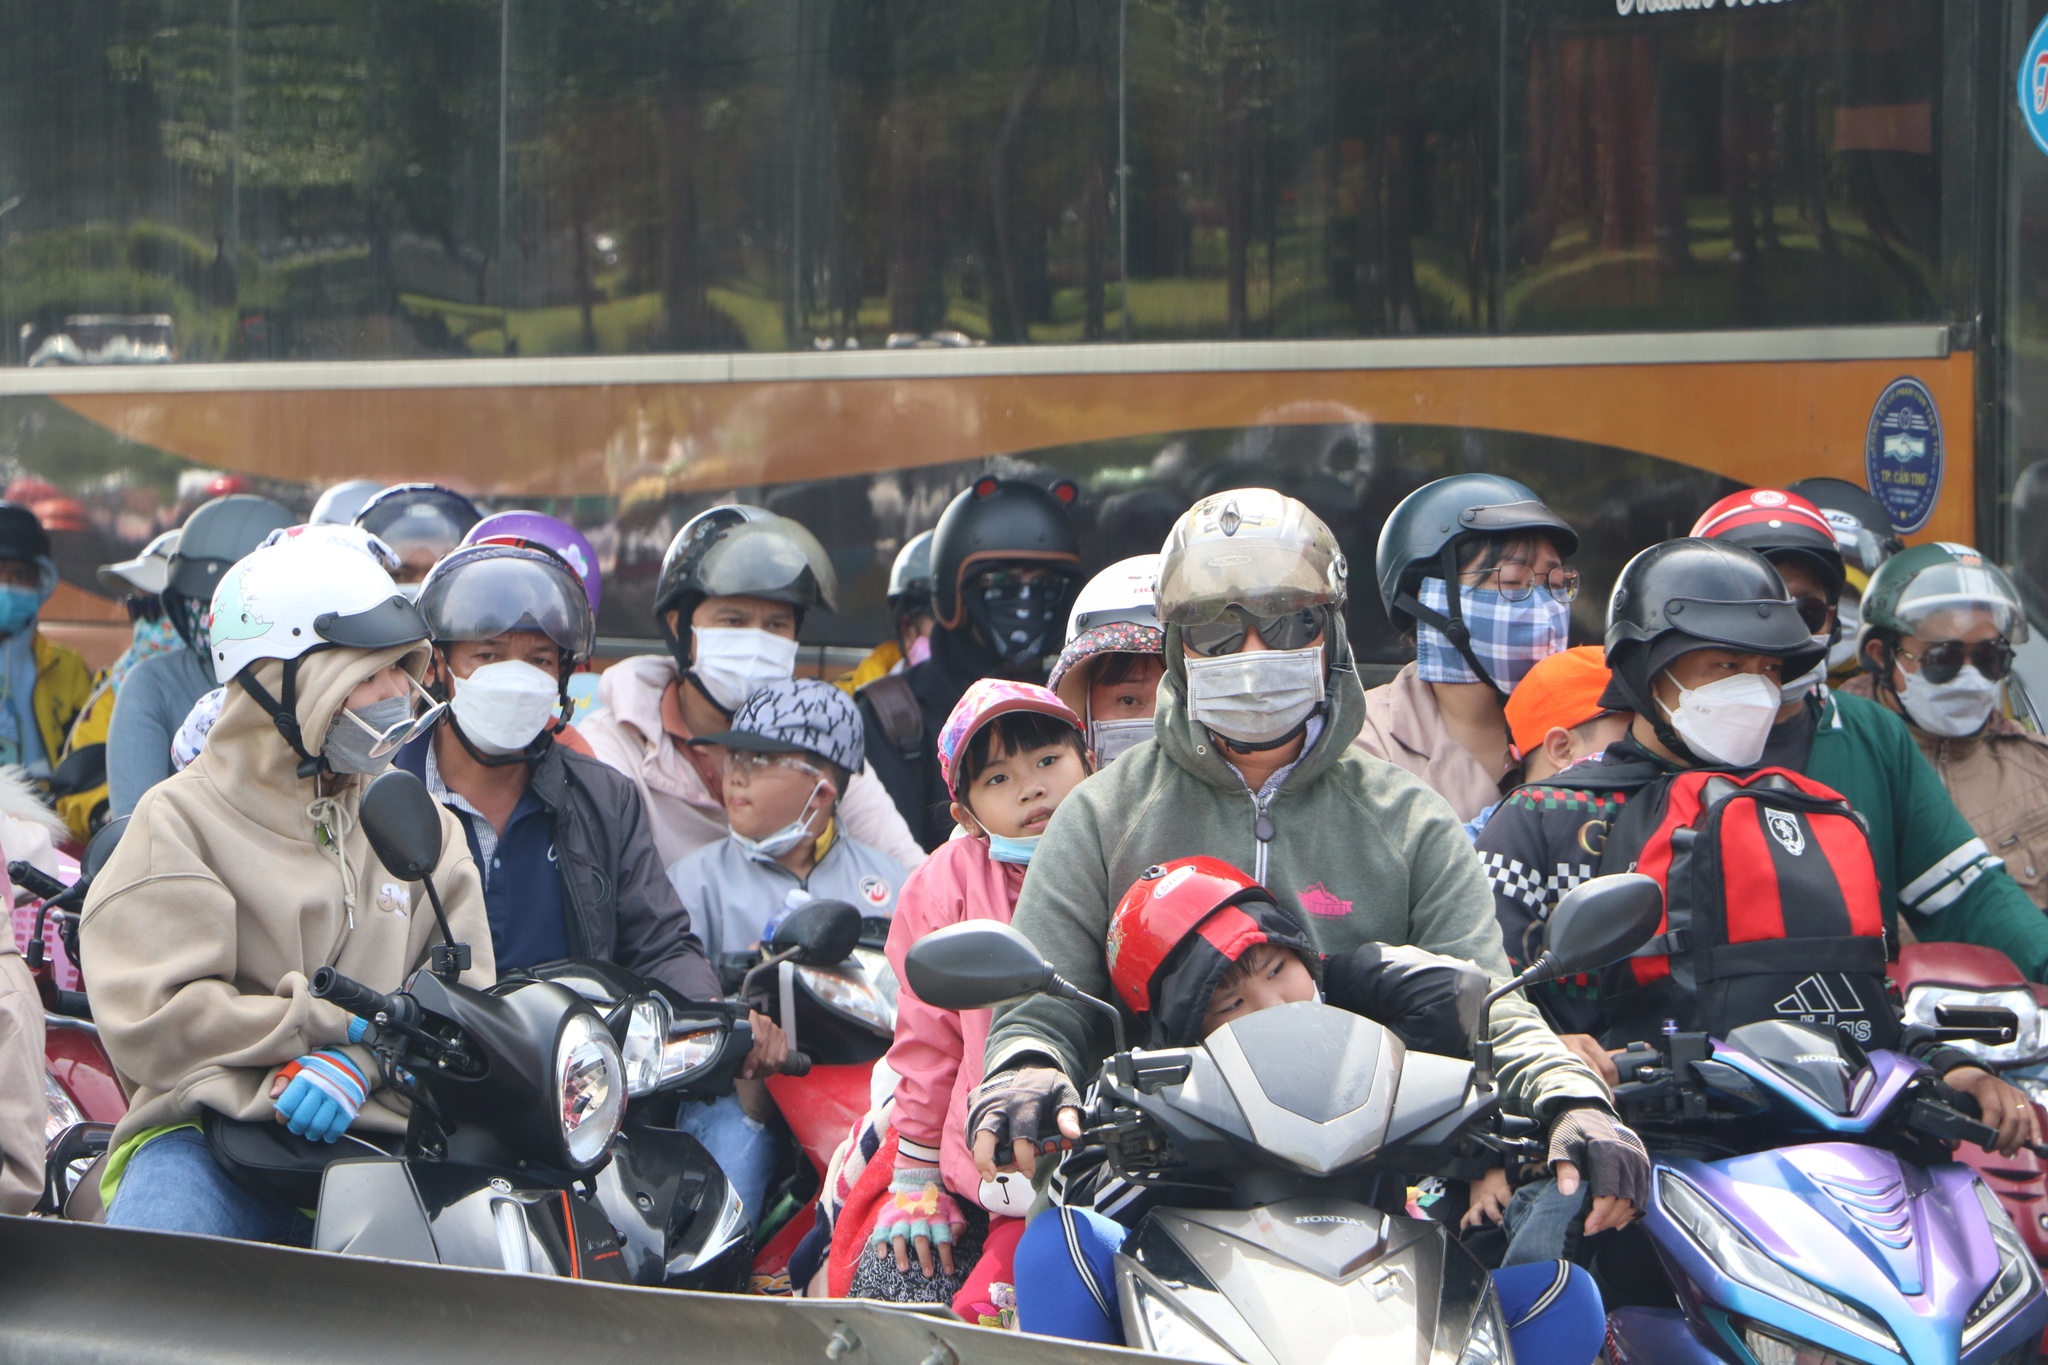 Trở lại TP.HCM làm việc sau tết: Mệt lả người vì kẹt xe ở cầu Mỹ Thuận - ảnh 5